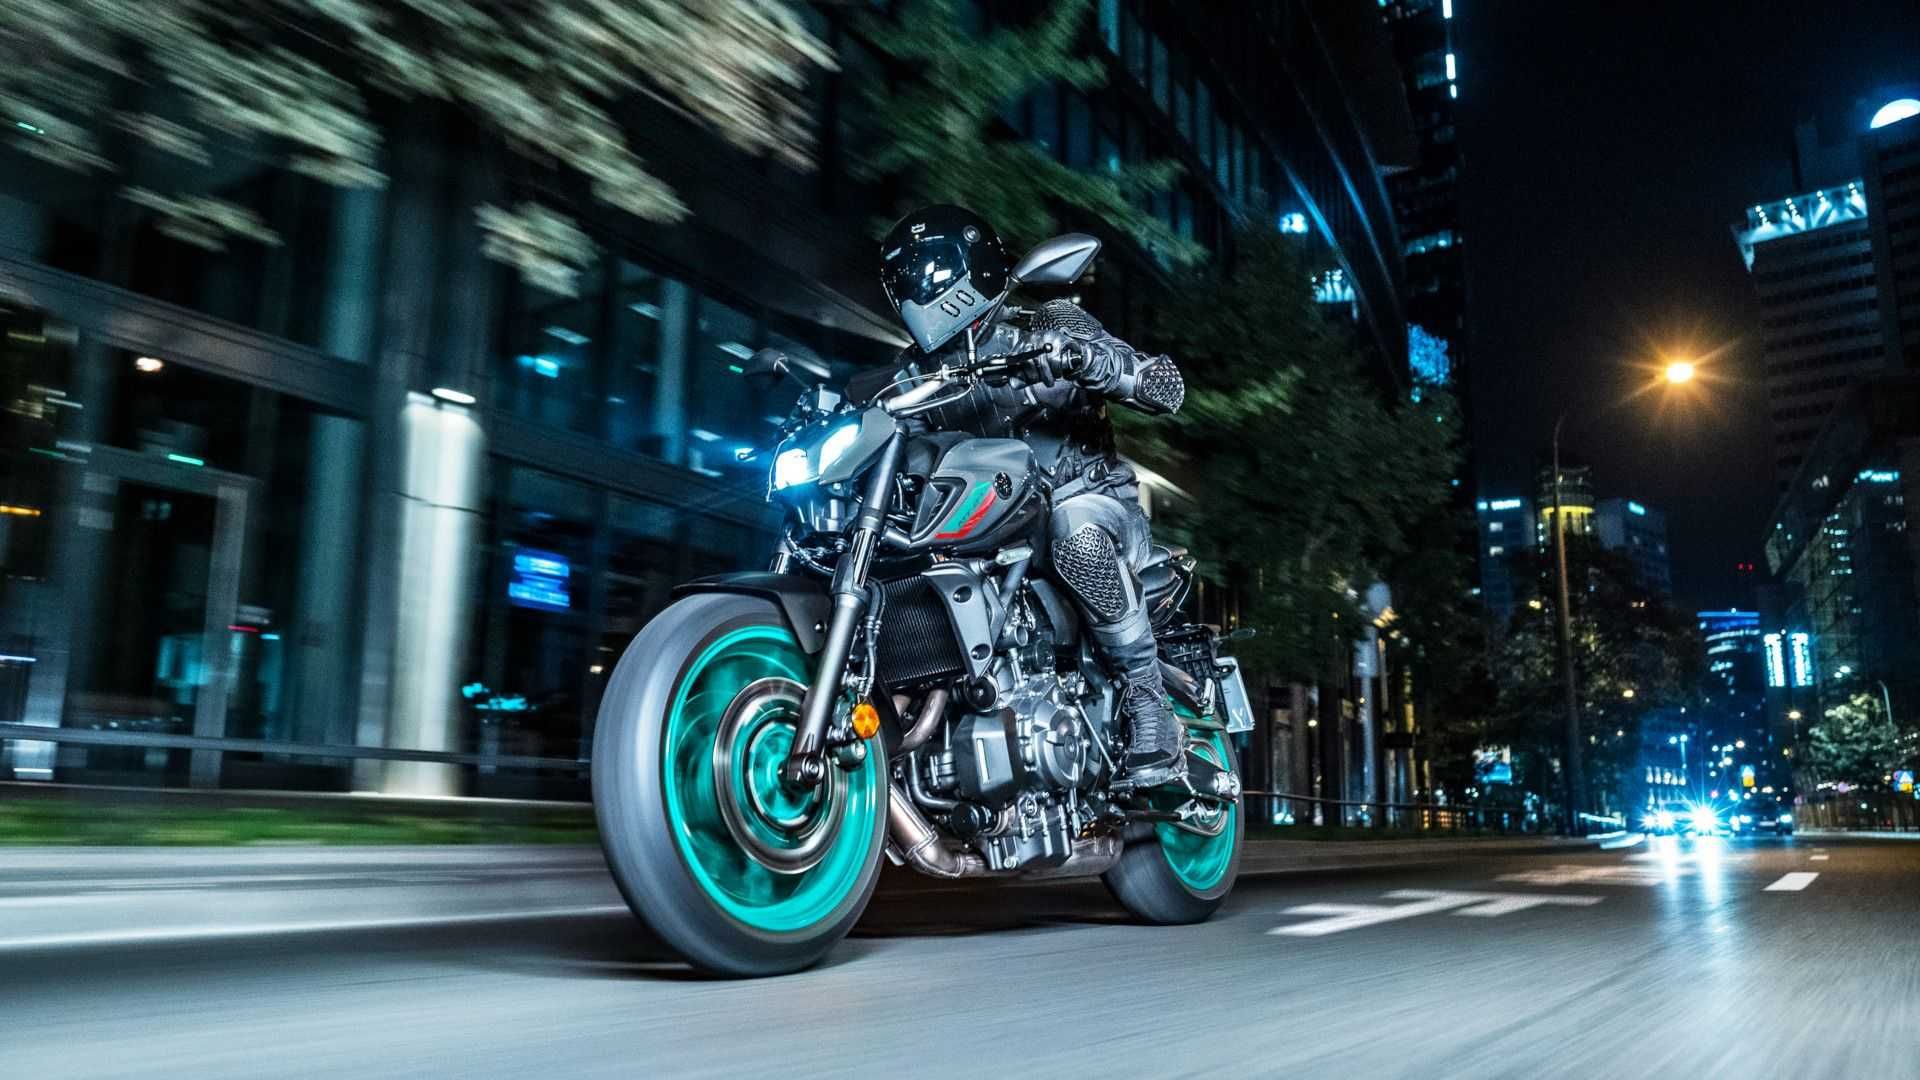 Yamaha MT-07 riding shot